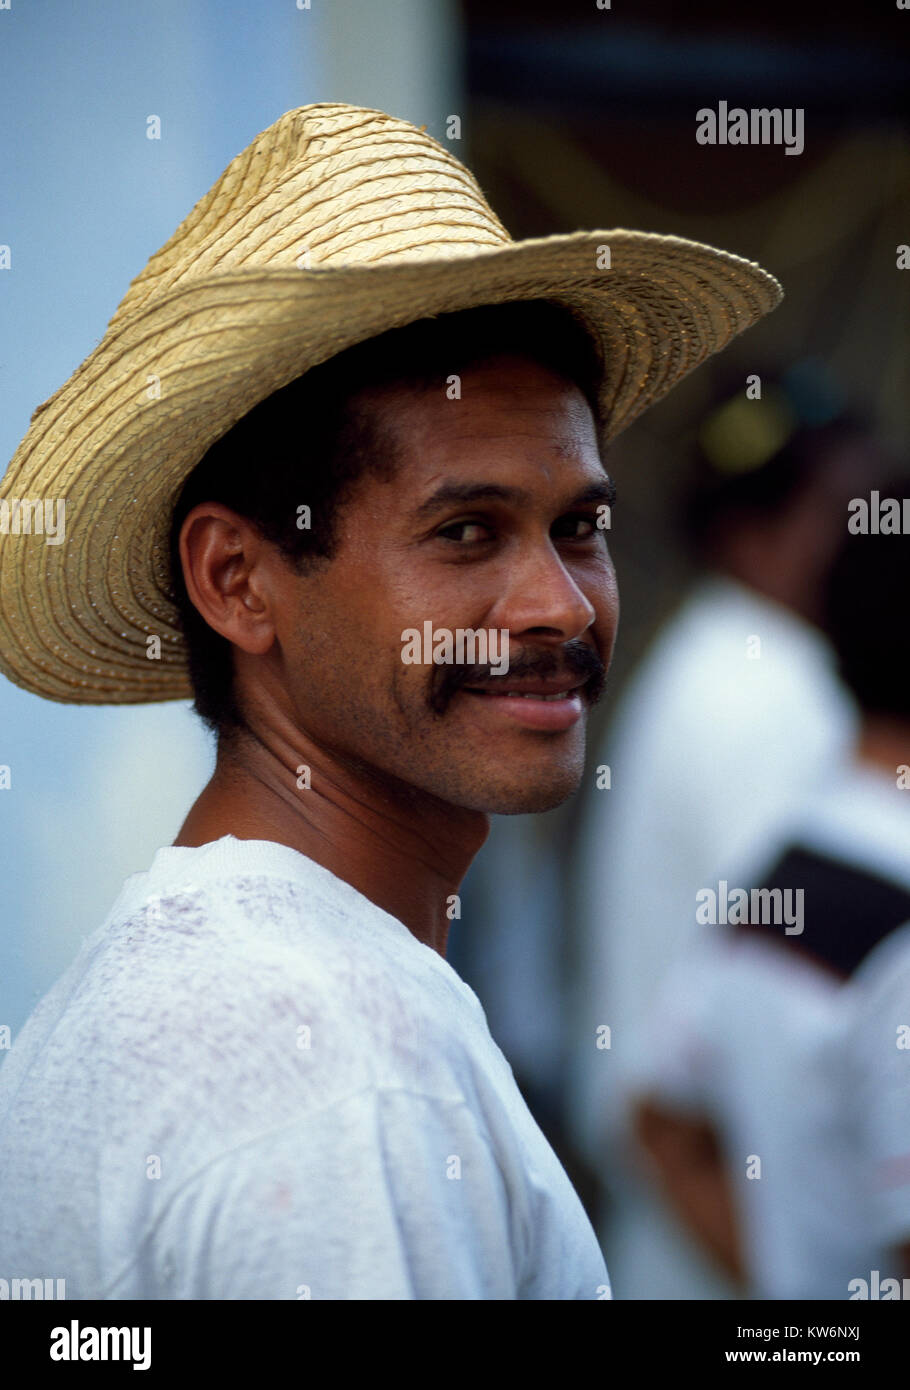 Young man in Guantanamo,Cuba Stock Photo